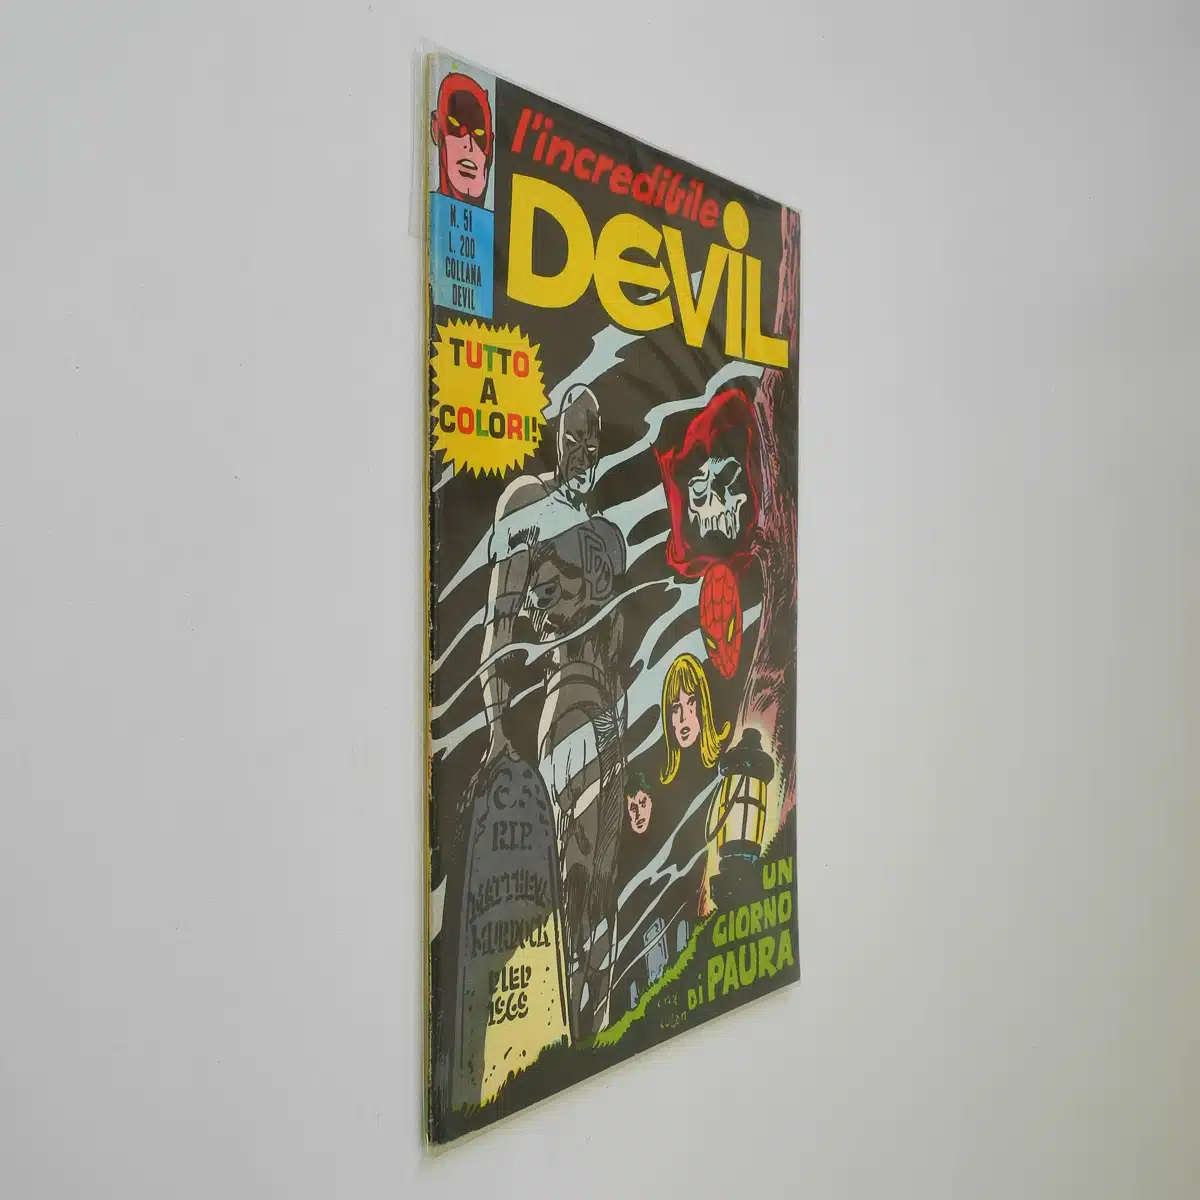 L’Incredibile Devil n. 51 a colori Un giorno di paura